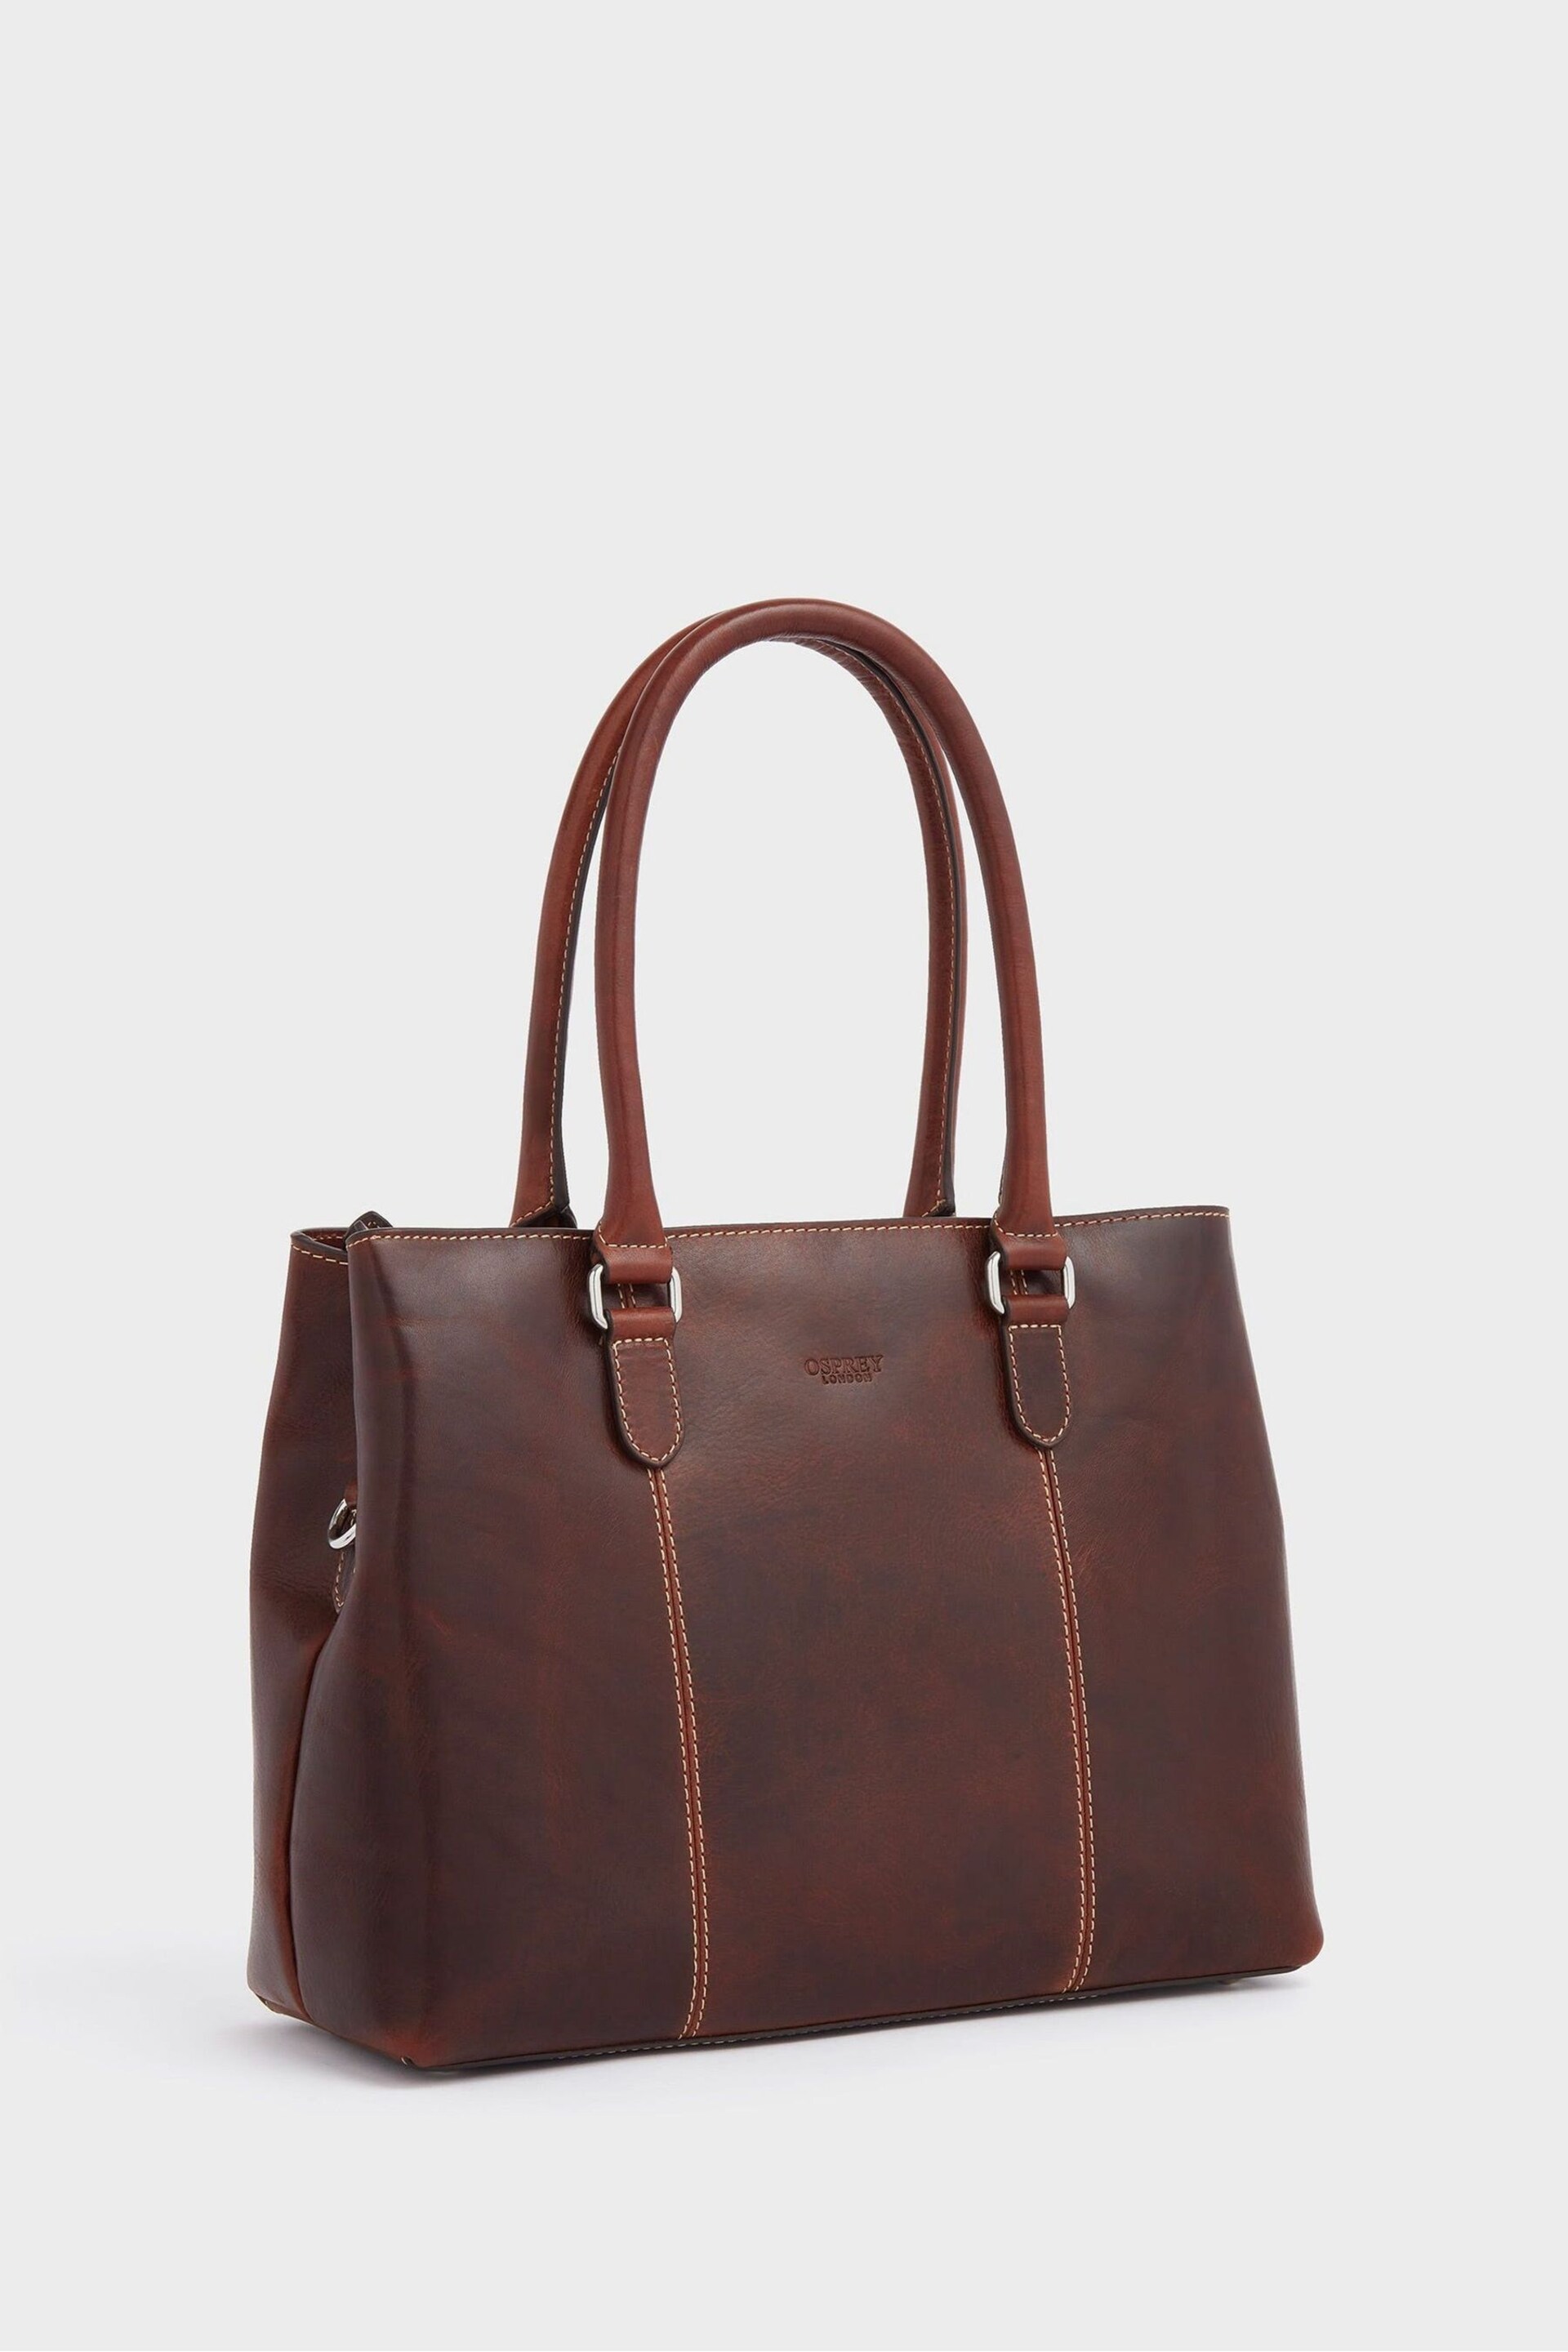 OSPREY LONDON The Madden Leather Shoulder Brown Workbag - Image 3 of 6